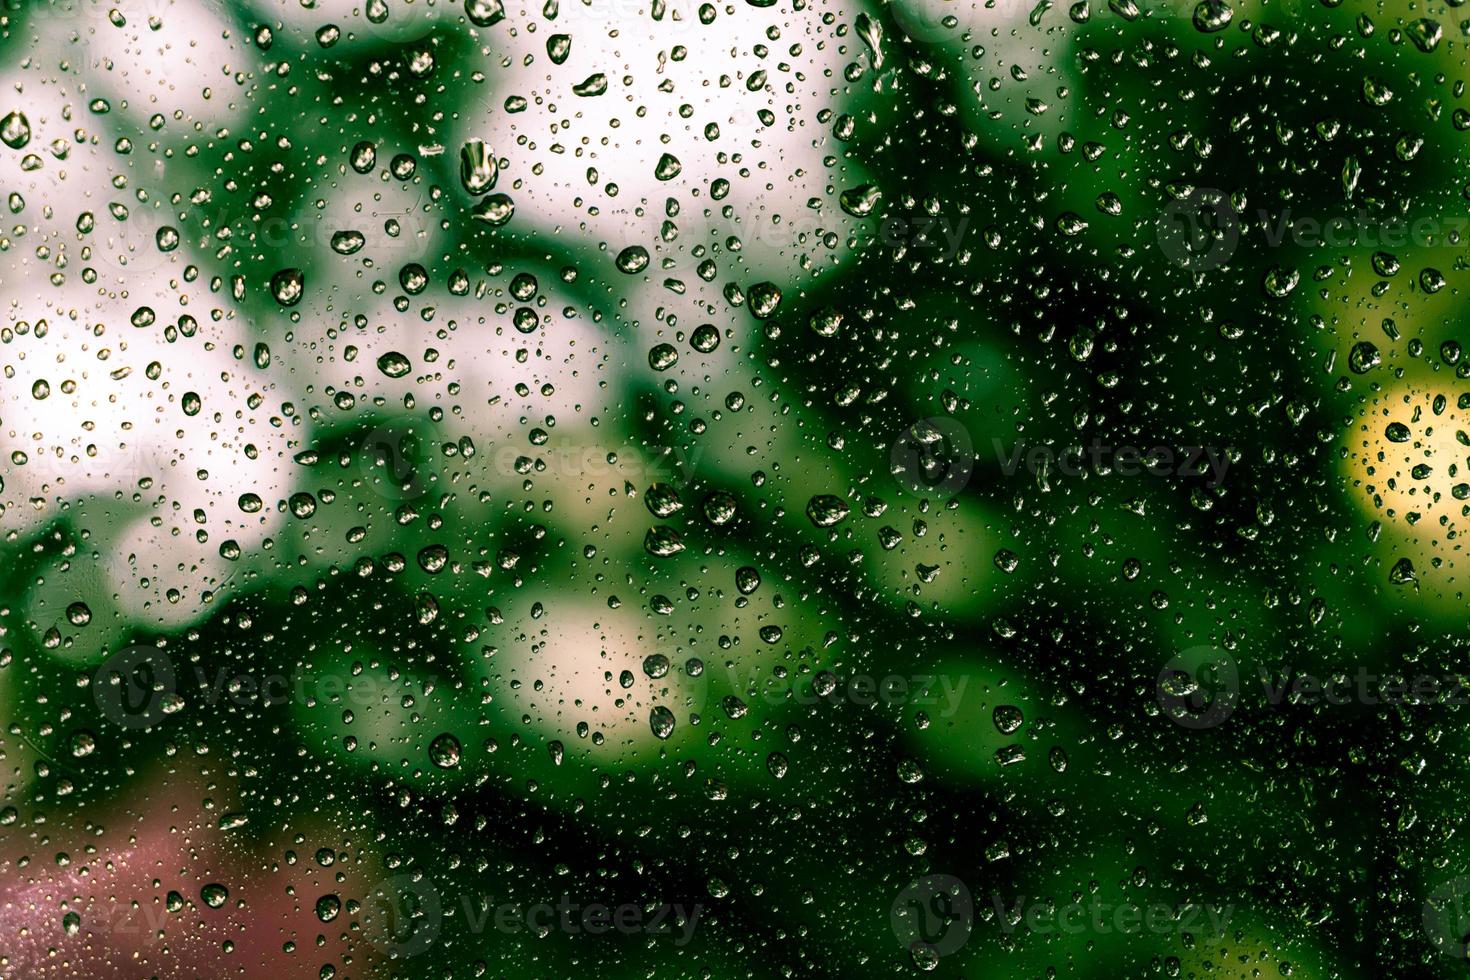 gouttes de pluie sur la fenêtre photo